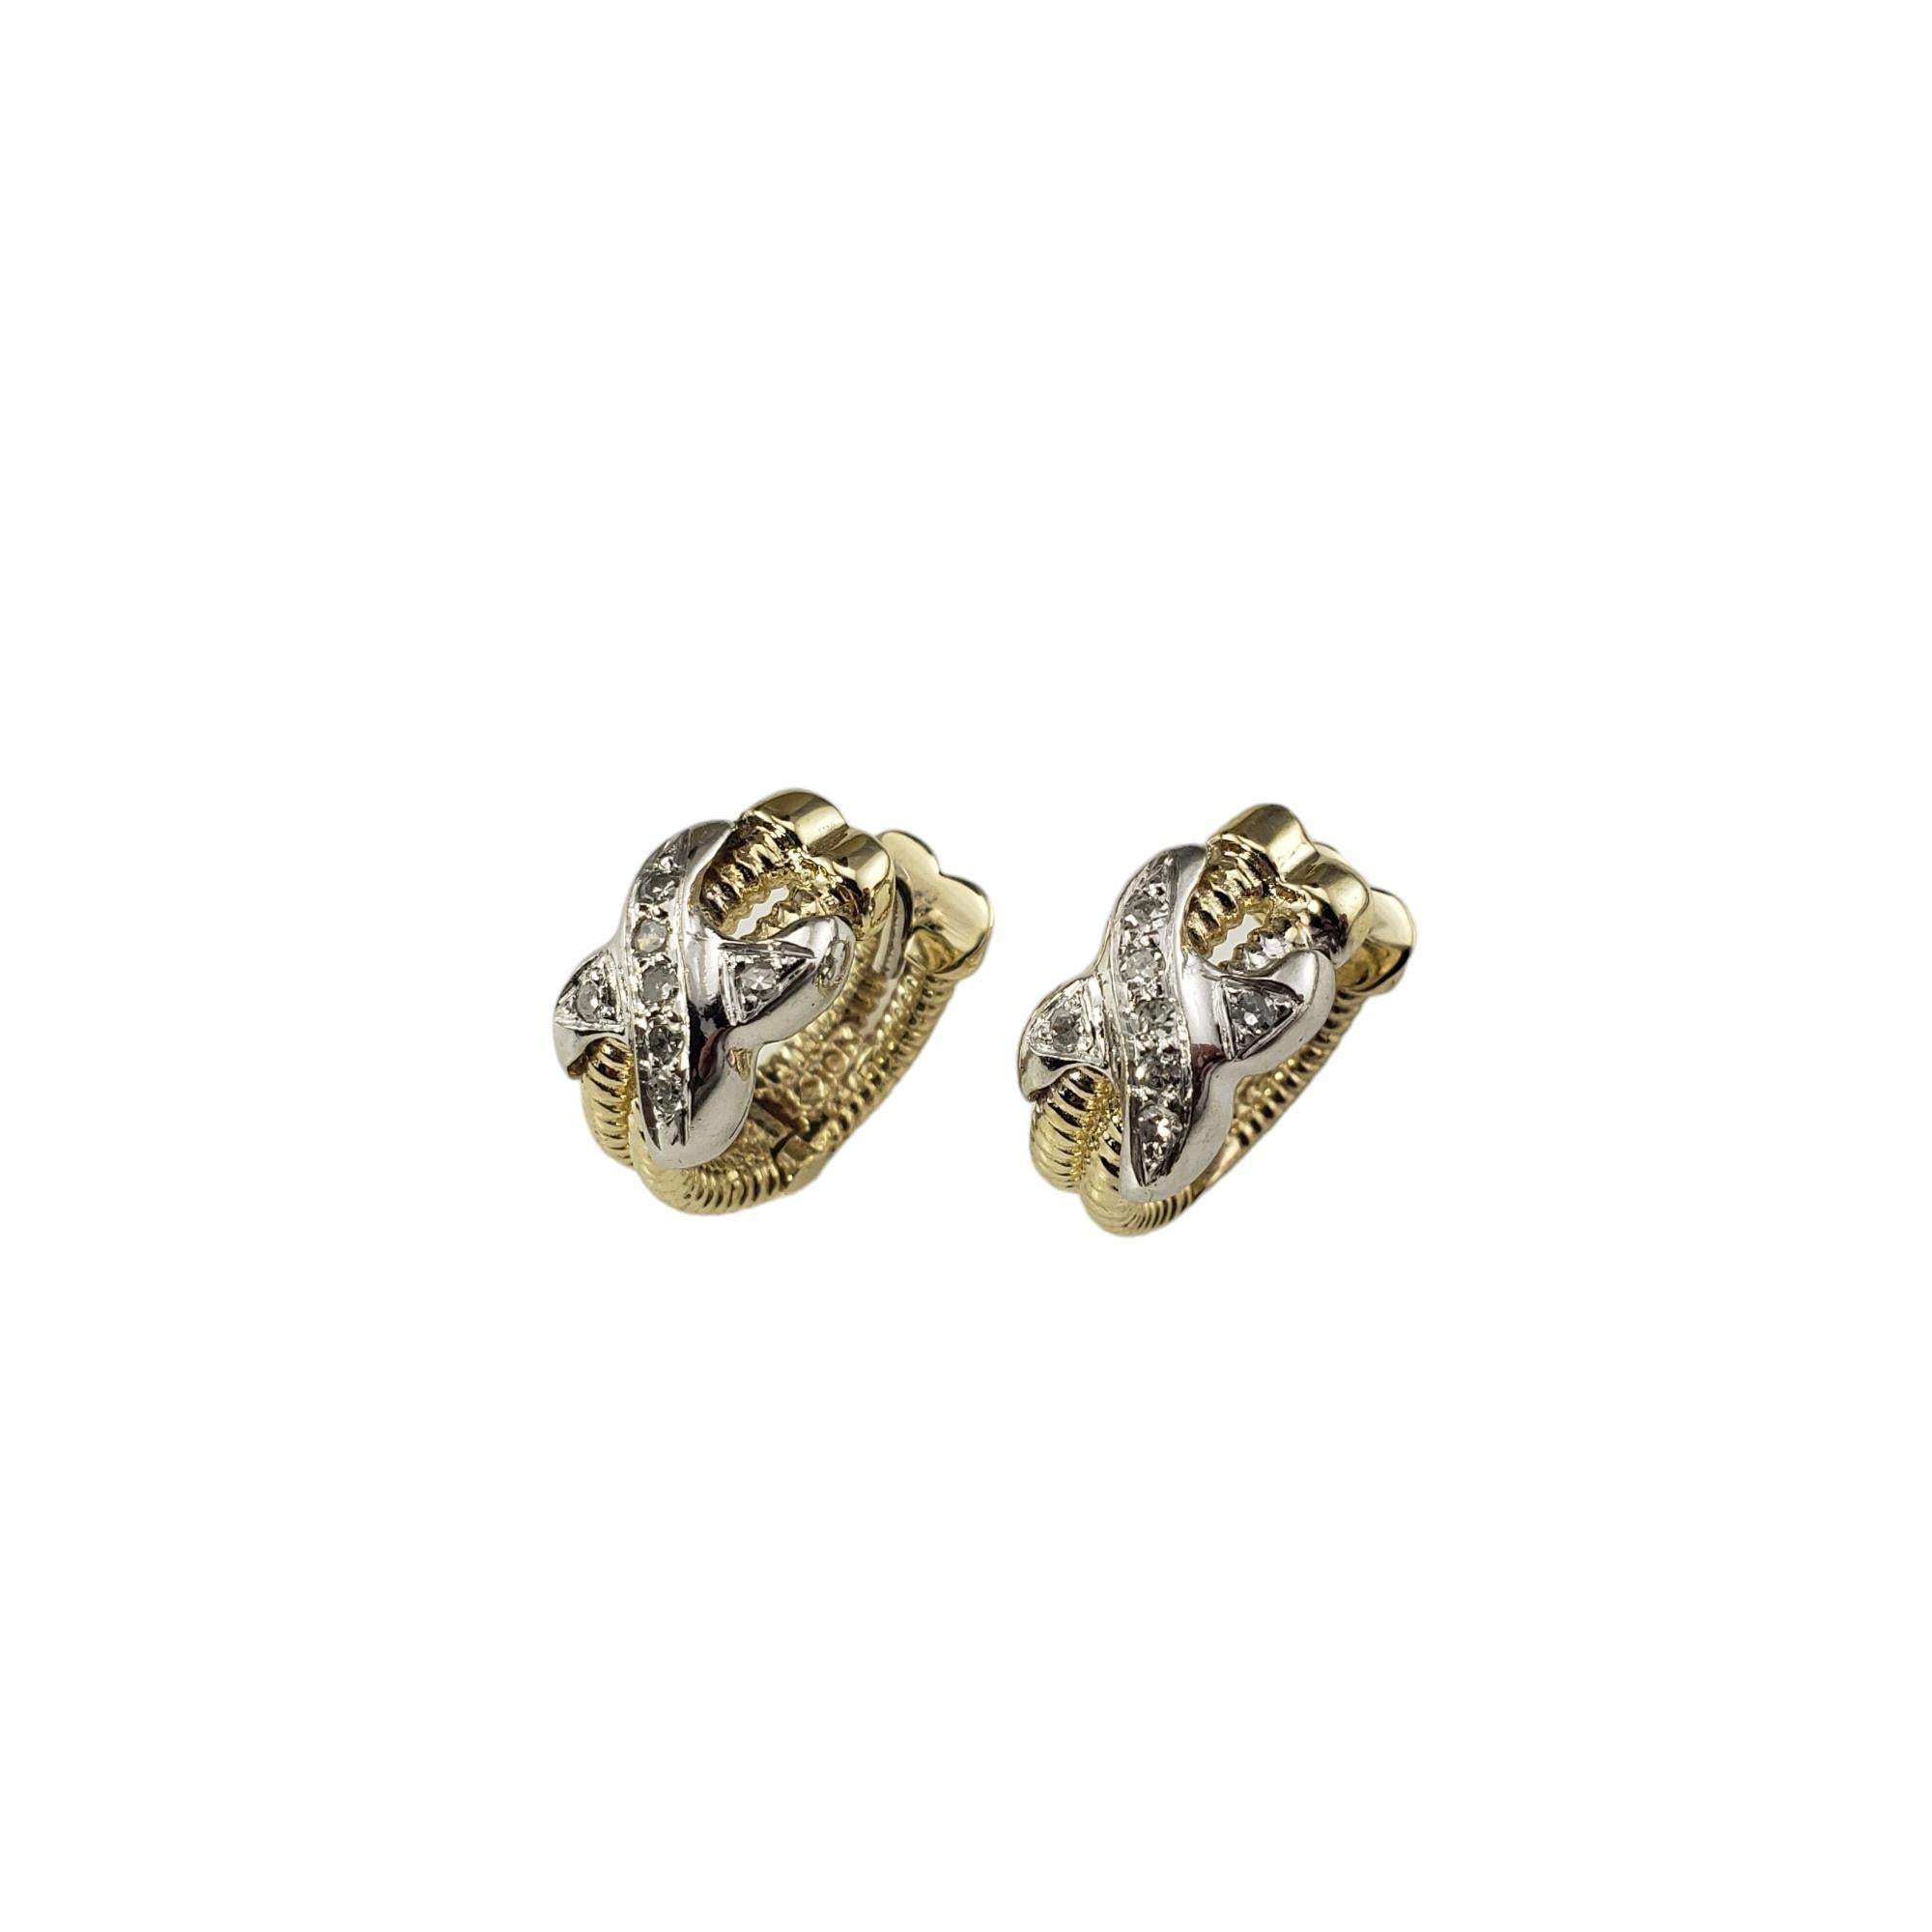 Boucles d'oreilles X en or jaune 10K, or blanc et diamants

Ces jolies boucles d'oreilles présentent chacune sept diamants ronds de taille unique sertis dans de l'or jaune et blanc 10K magnifiquement détaillé.

 Largeur : 7 mm.

Poids total